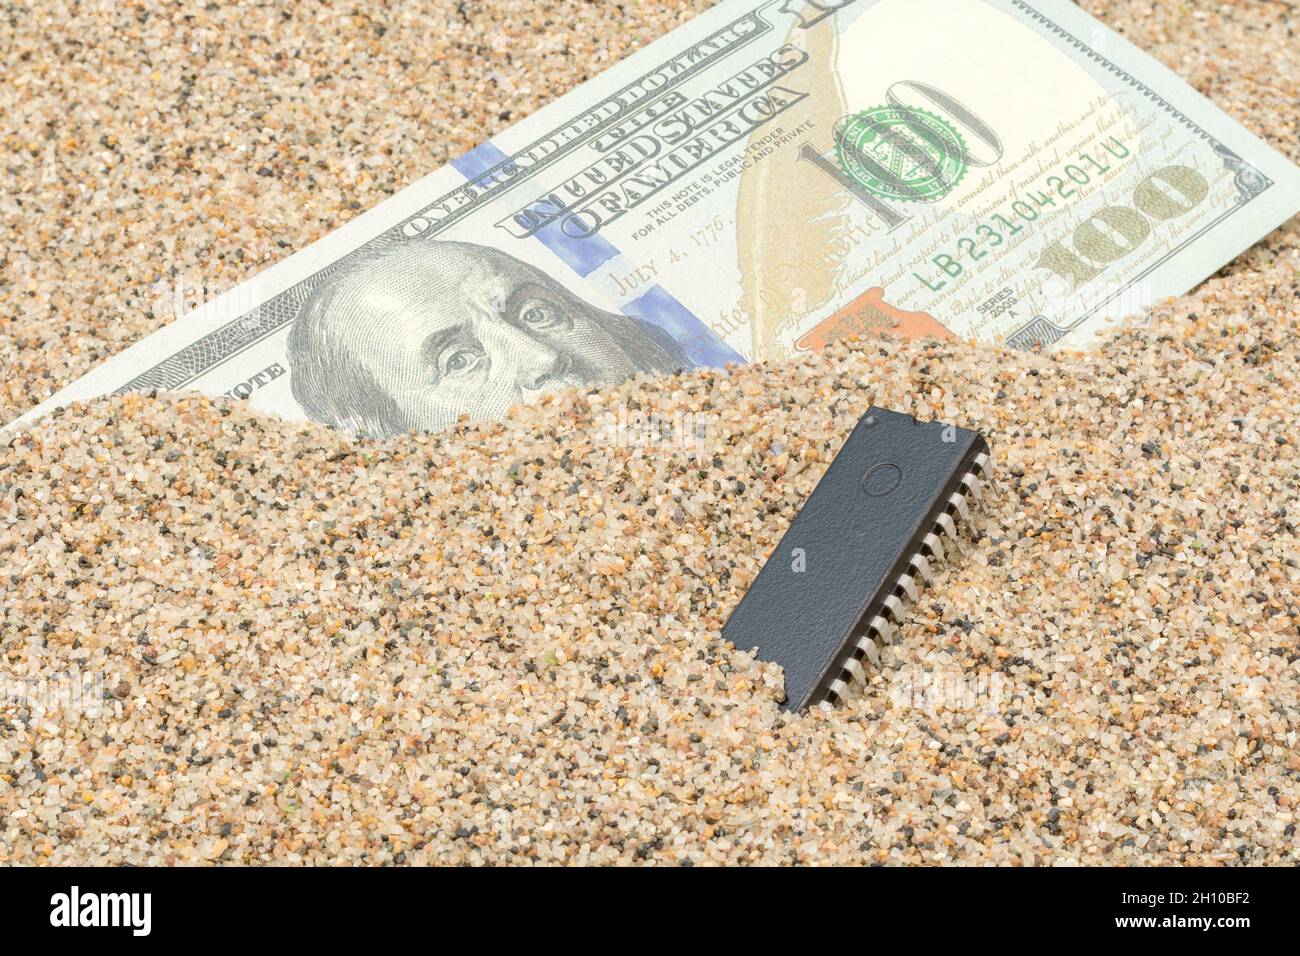 US-Banknote mit 100 US-Dollar/Banknote von Benjamin Franklin, vergraben in Sand mit Mikrochip. Für US-Halbleiterchip-Engpässe im Technologiesektor. Stockfoto